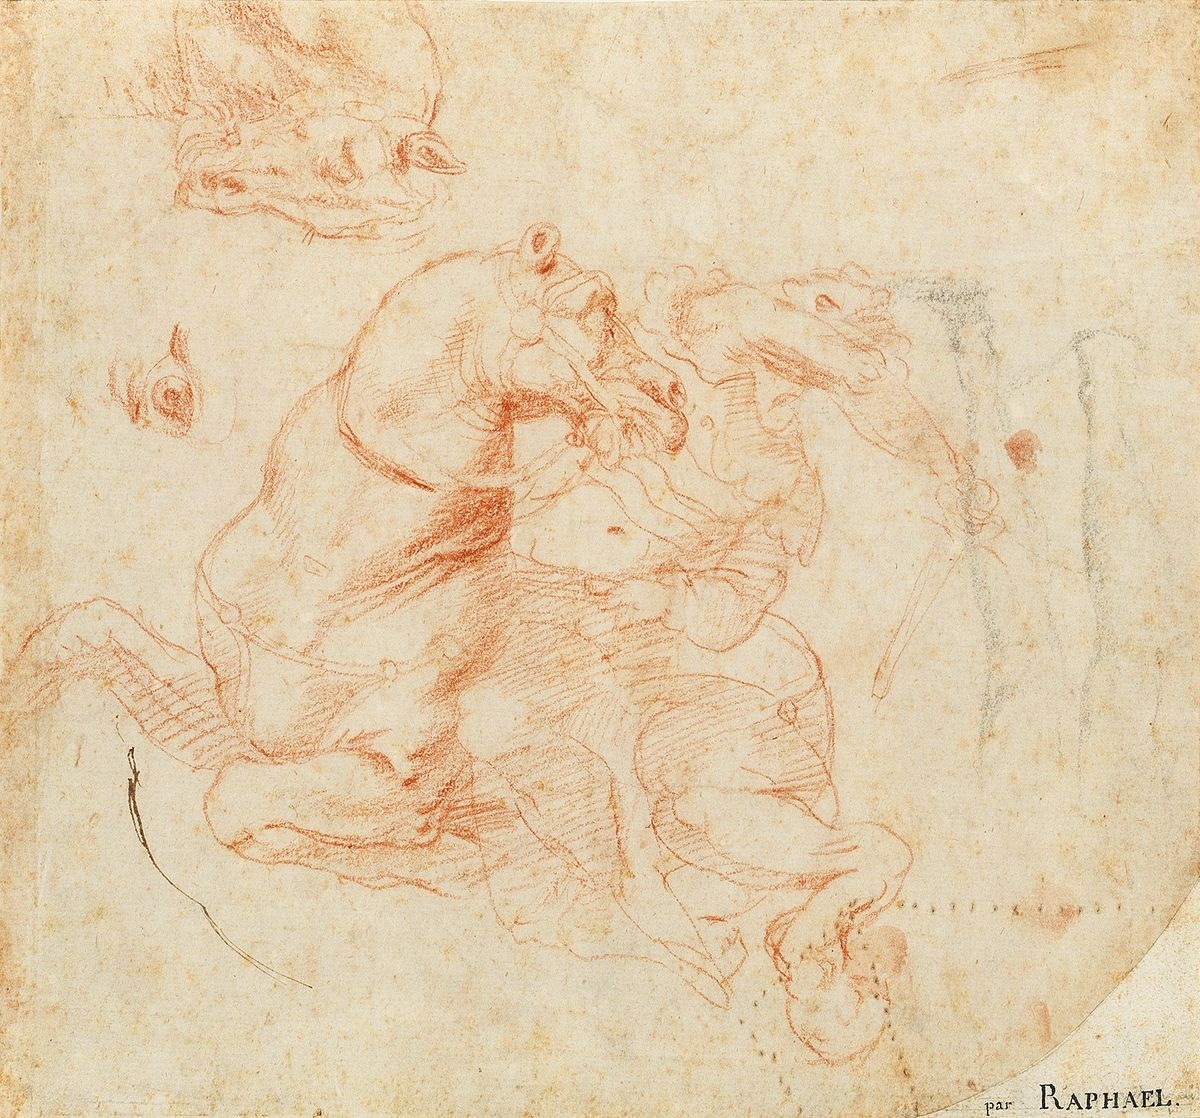 À Vienne, Dorotheum dévoile un dessin retrouvé de Raphaël